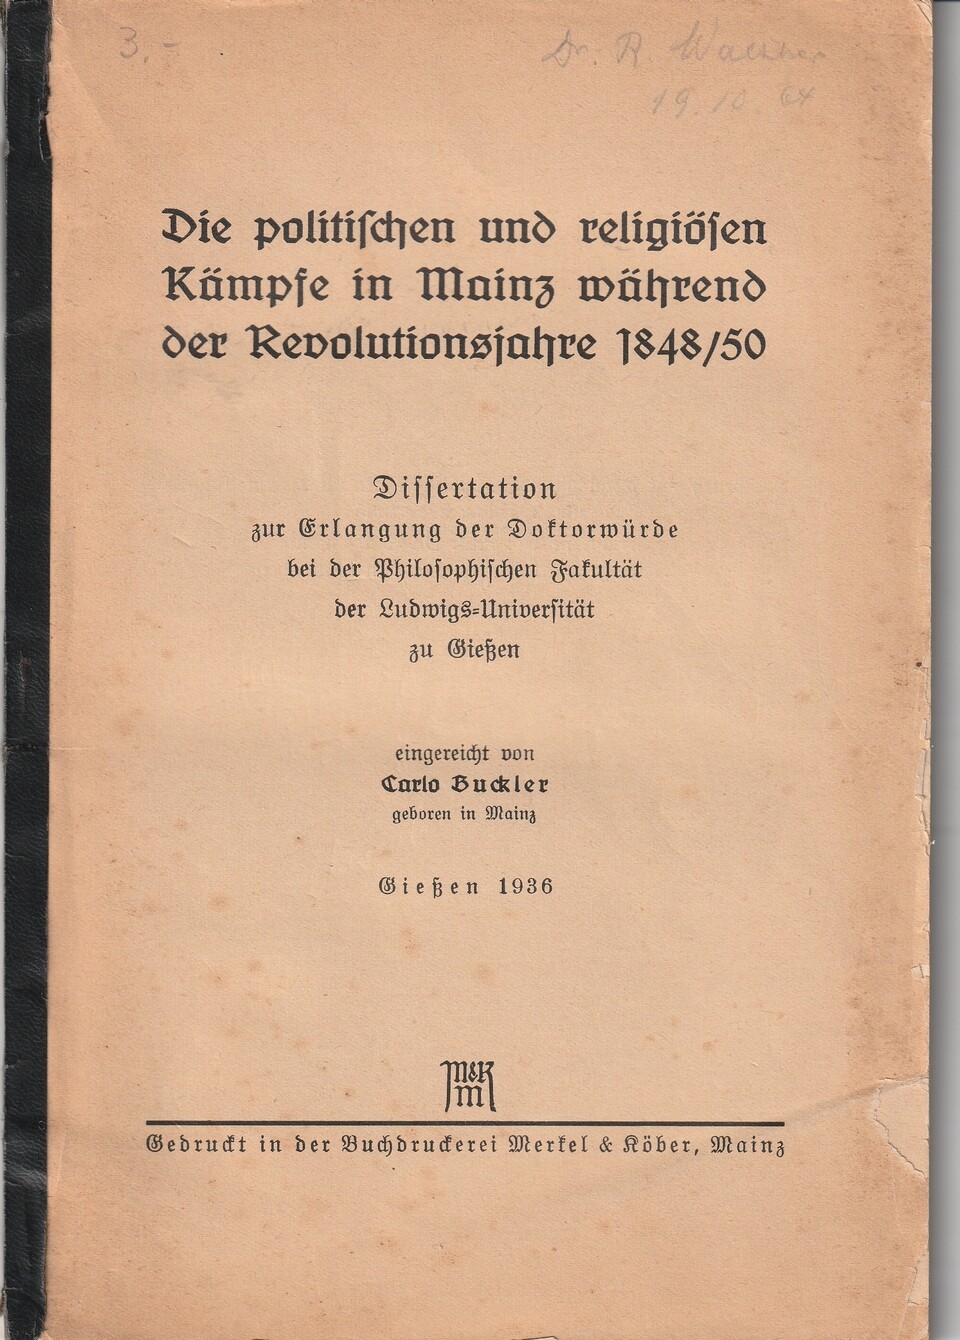 Die politischen und religiösen Kämpfe in Mainz während der Revolutionsjahre 1848/50 (Kulturverein Guntersblum CC BY-NC-SA)